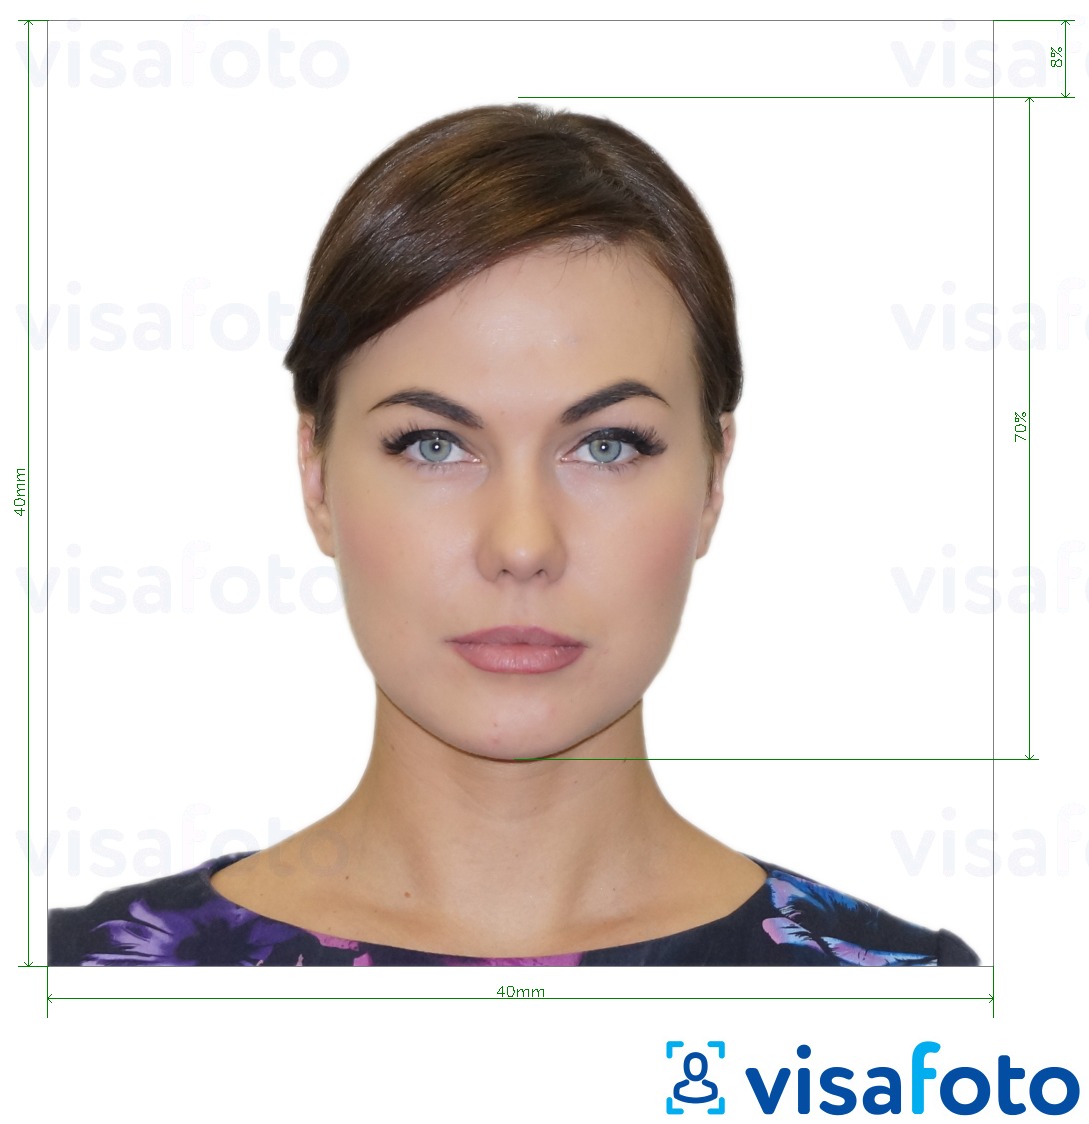 Contoh dari foto untuk Visa Argentina 4x4 cm (40x40 mm) dengan ukuran spesifikasi yang tepat